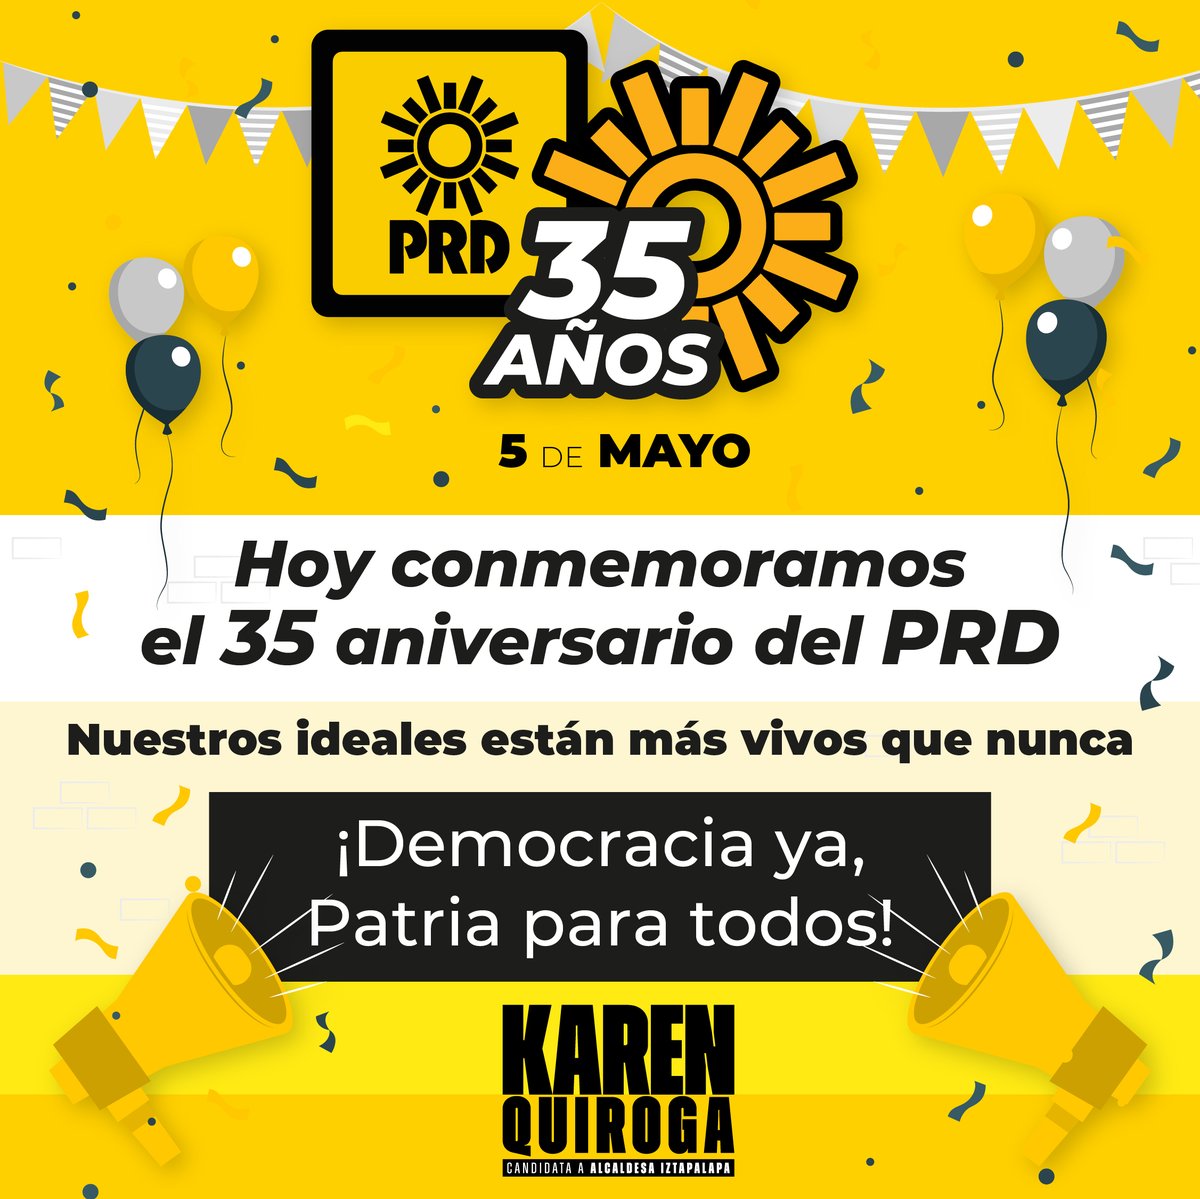 El @PRDMexico cumple 35 años de luchas, de cercanía con el pueblo, de entender el vivir de las personas. Continuaremos trabajando para garantizar que todos y todas tengan una vida digna.

#PRD #Aniversario #SomosPRD